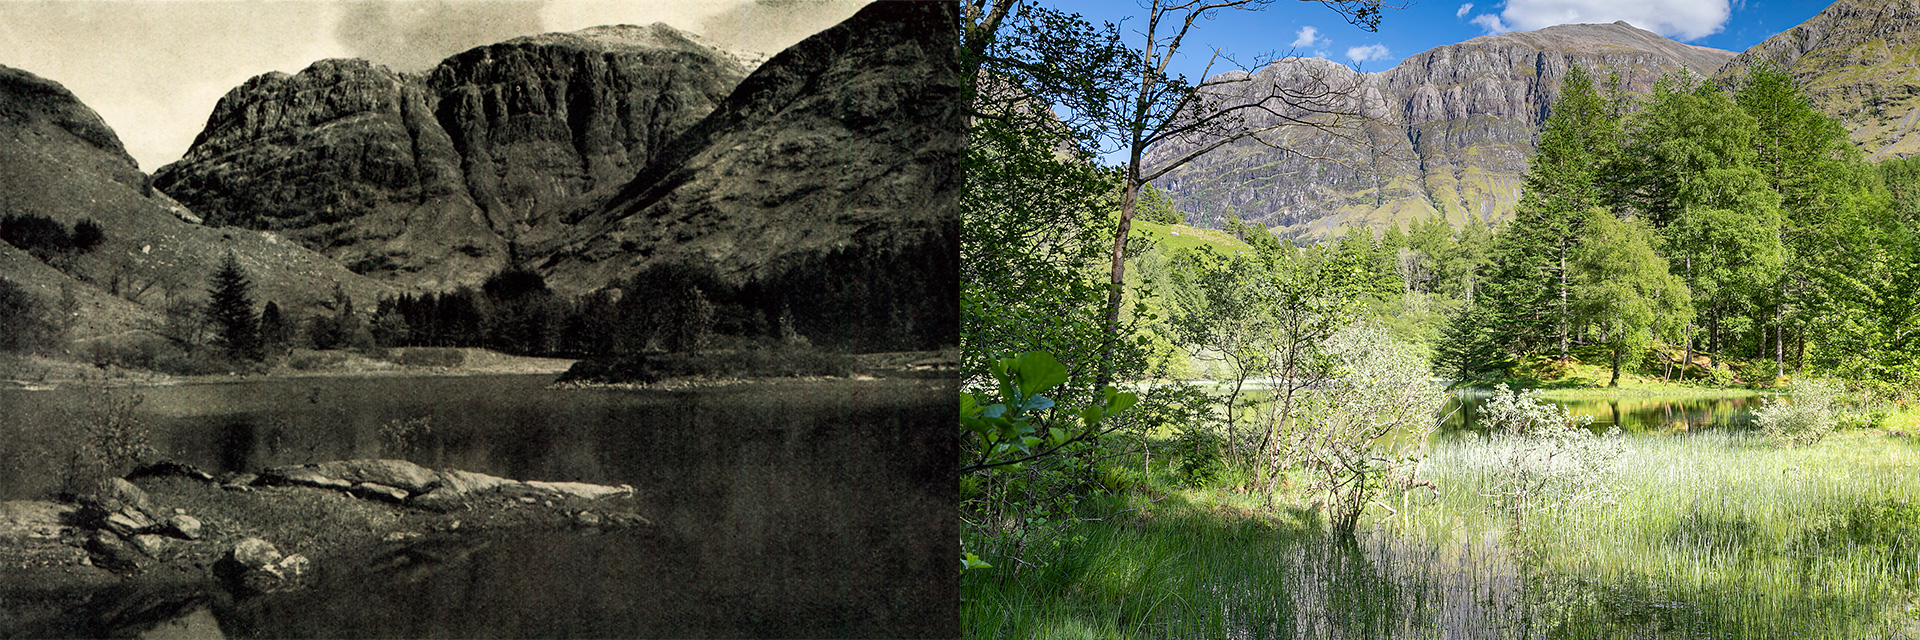 Glencoe | Torren Lochan - Then and now